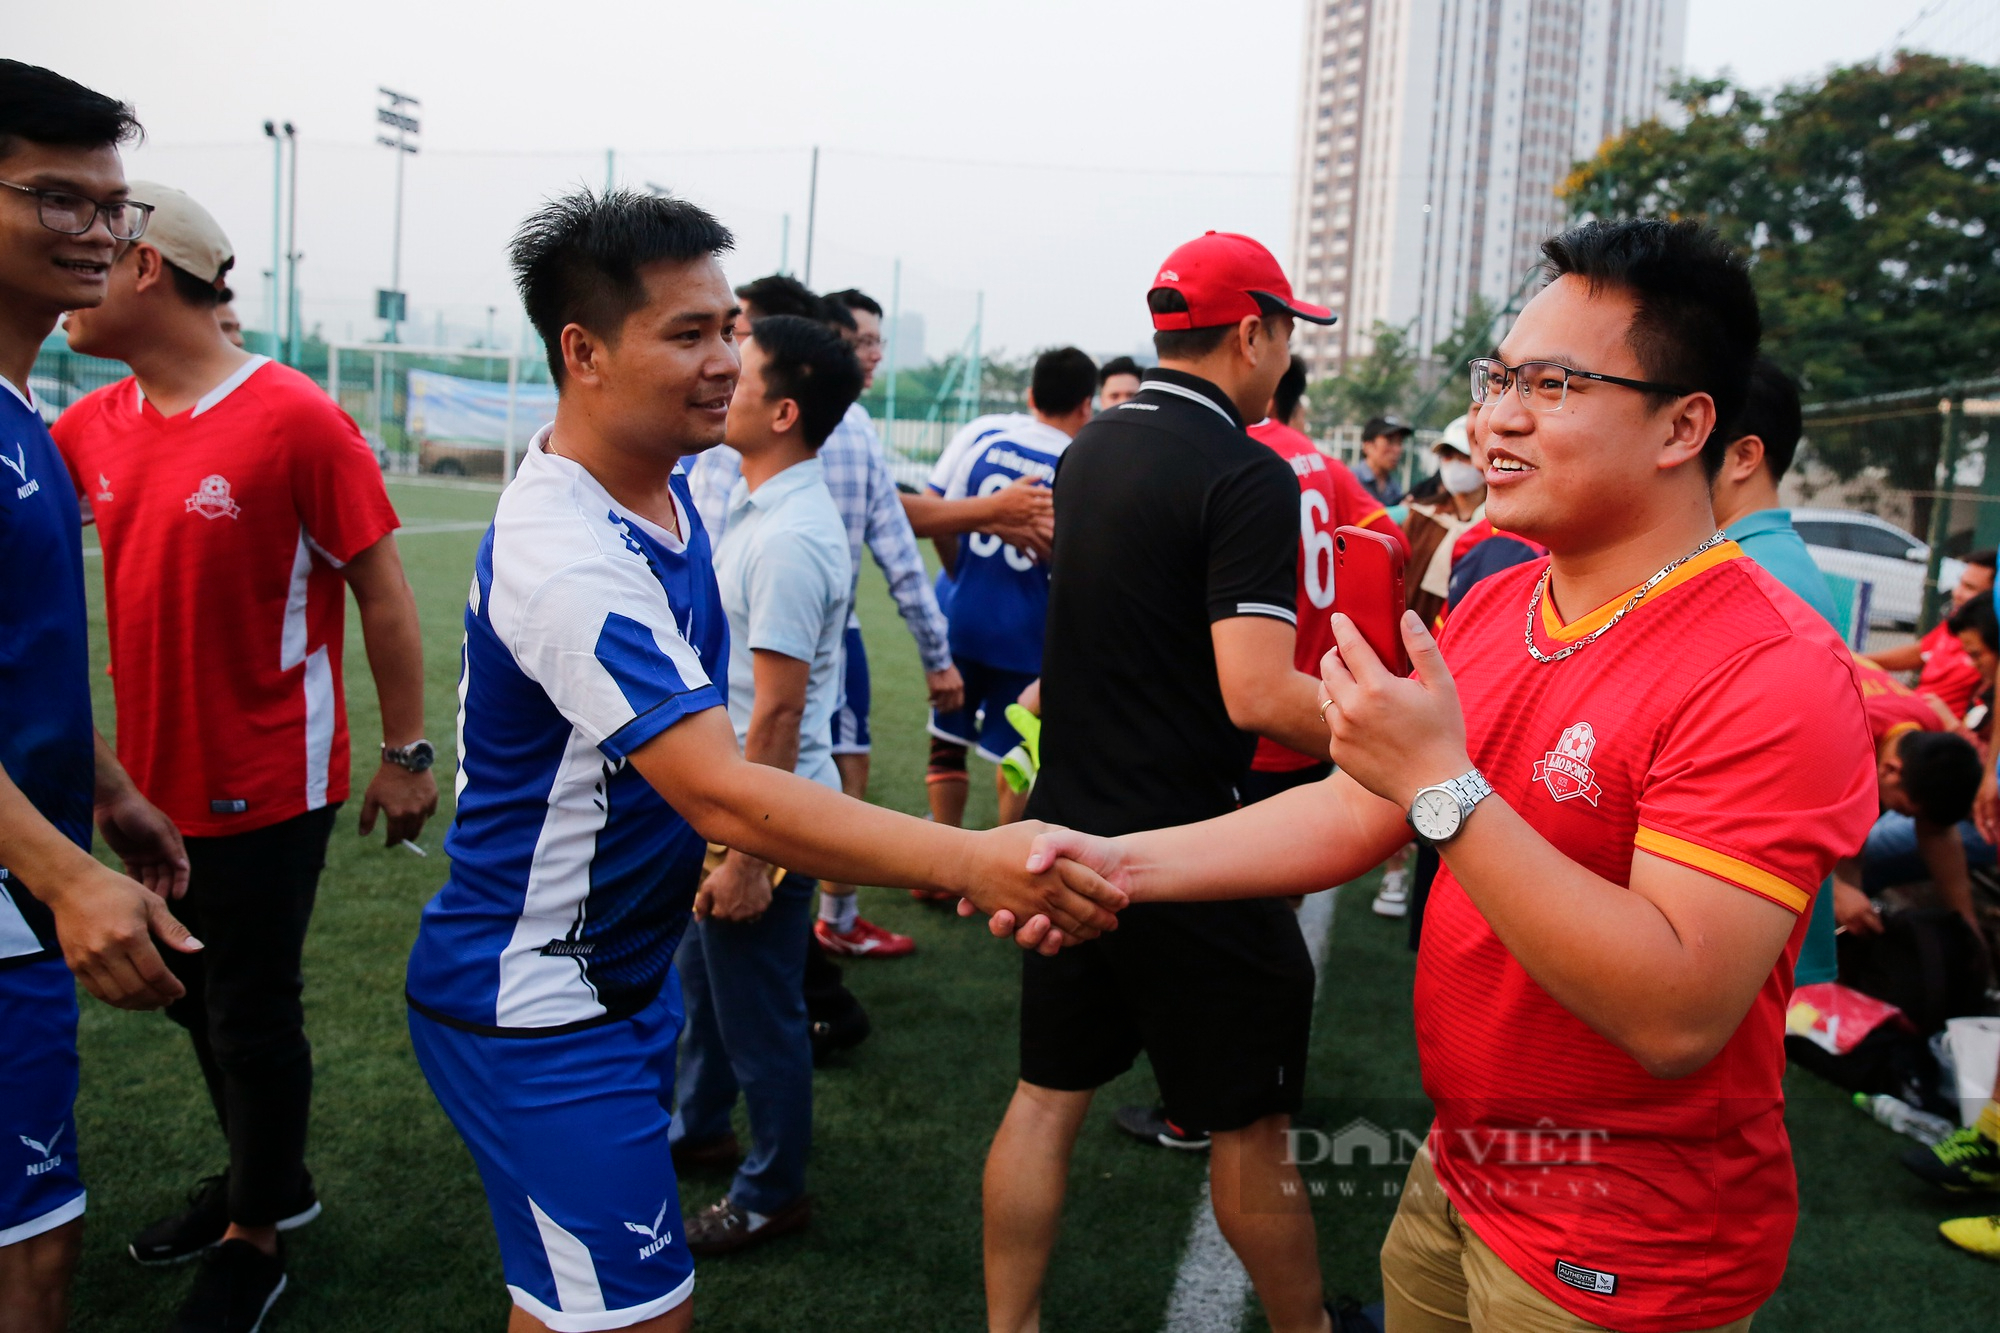 Đội bóng VOV chính thức lên ngôi vô địch sau chiến thắng nghẹt thở trước báo Lao Động - Ảnh 15.